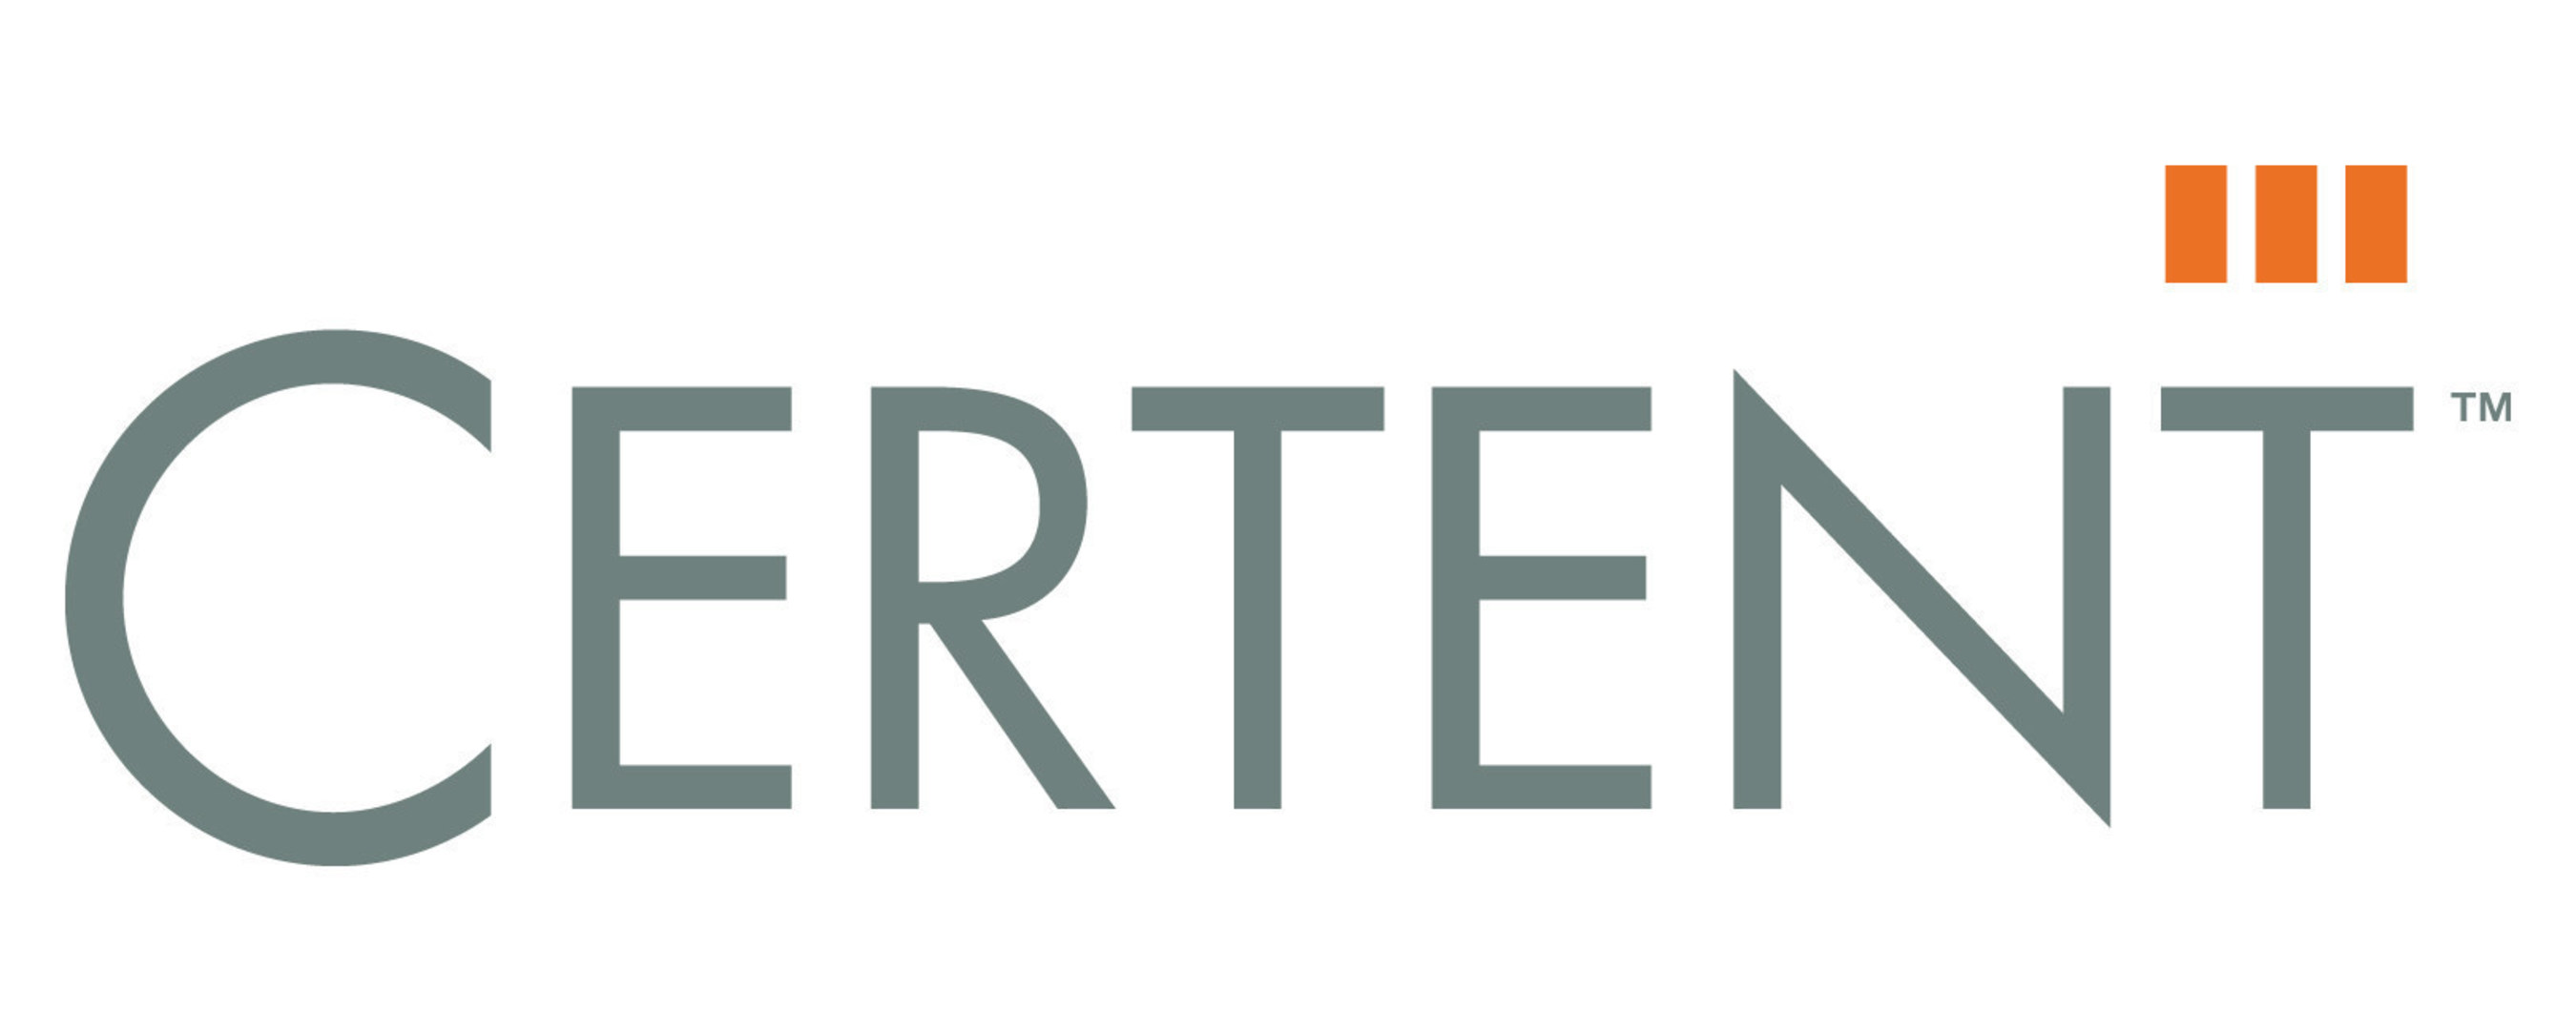 Certent logo